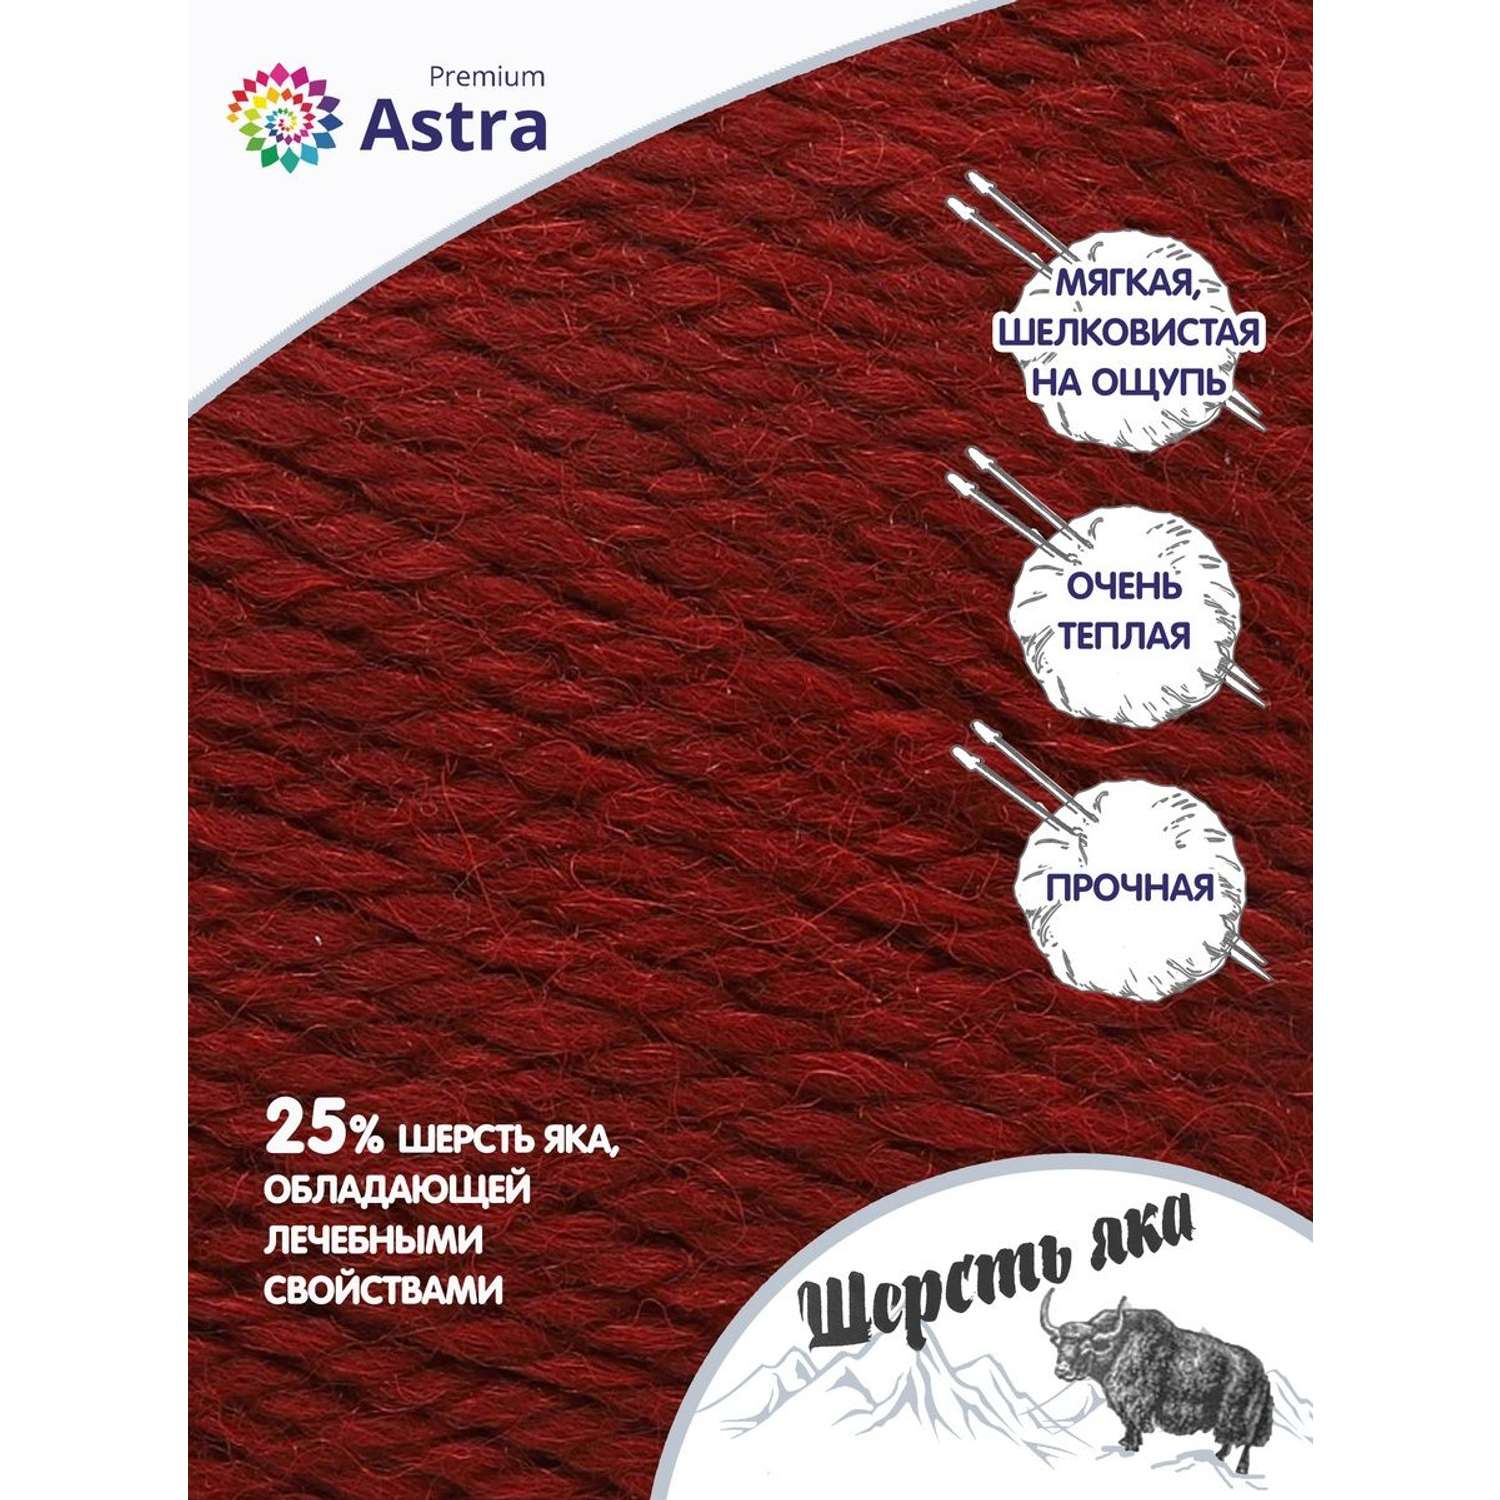 Пряжа Astra Premium Шерсть яка Yak wool теплая мягкая 100 г 120 м 25 темно-красный 2 мотка - фото 2